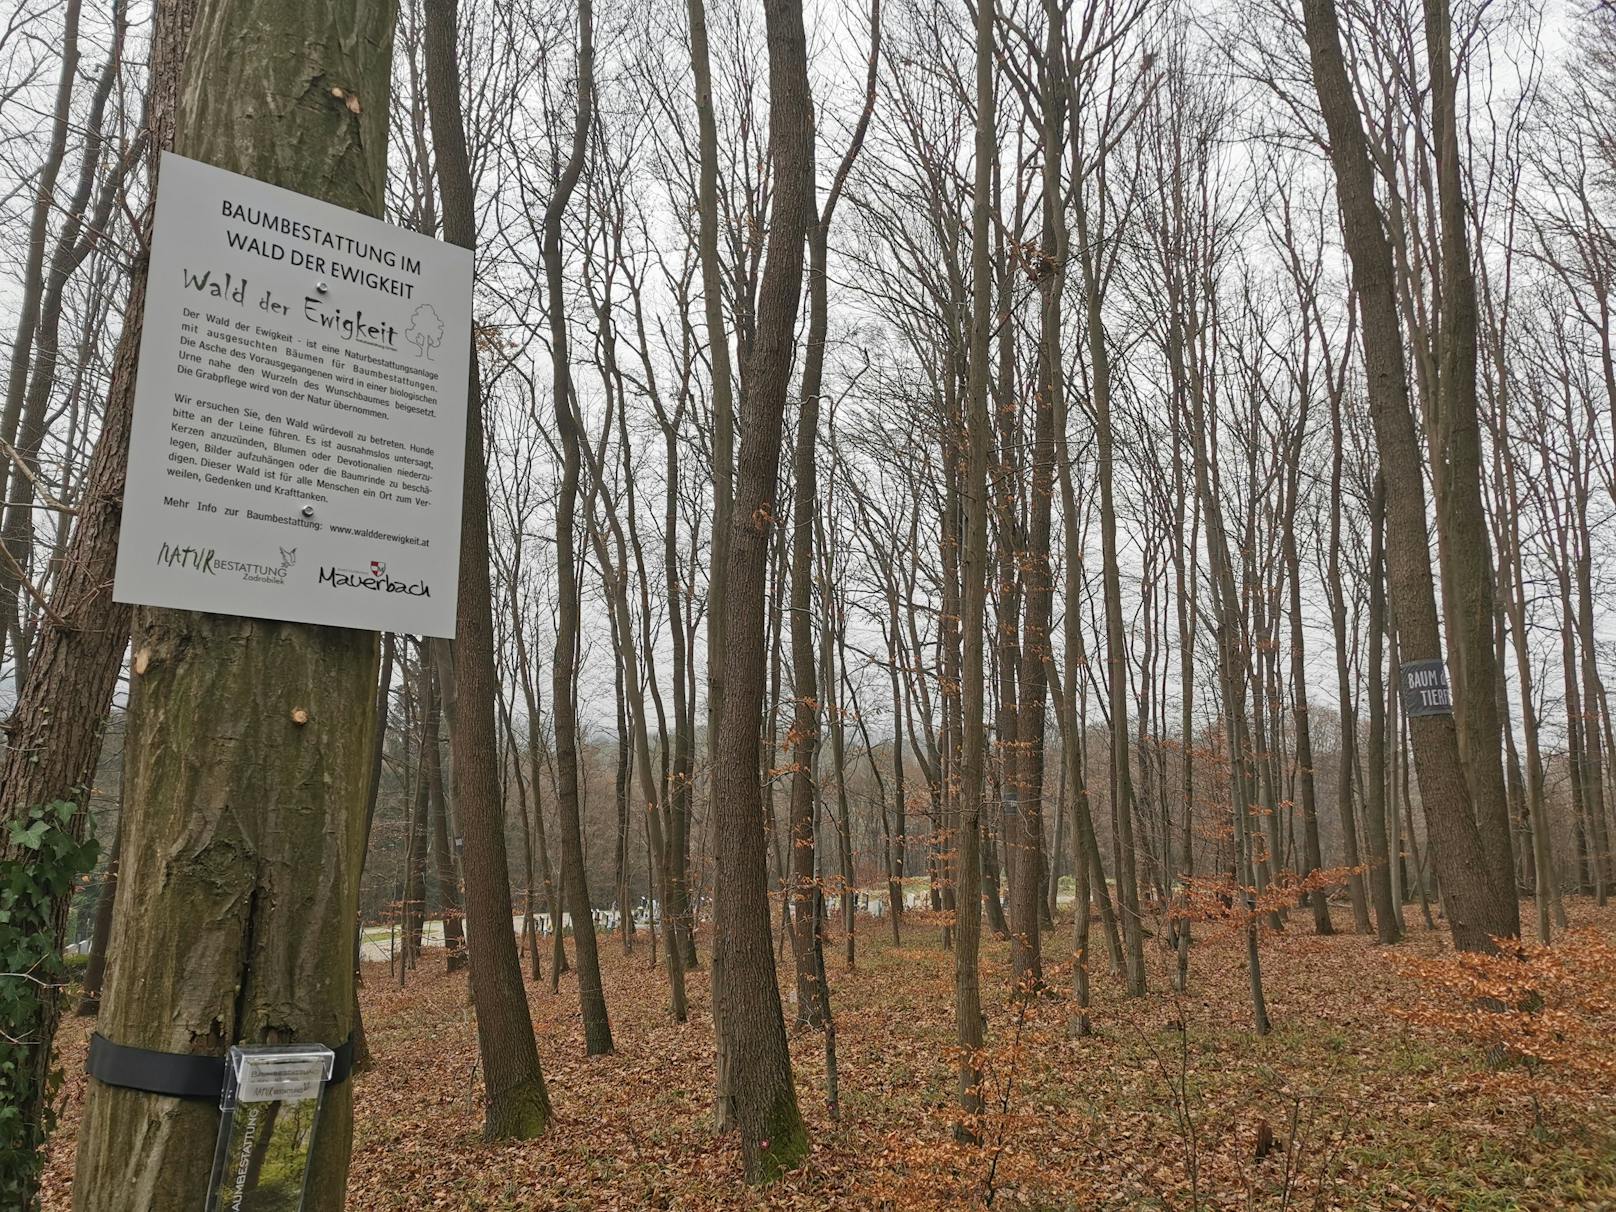 Am 1. Dezember 2022 hat die Naturbestattung Zadrobilek einen neuen "Wald der Ewigkeit" in Mauerbach in Betrieb genommen.